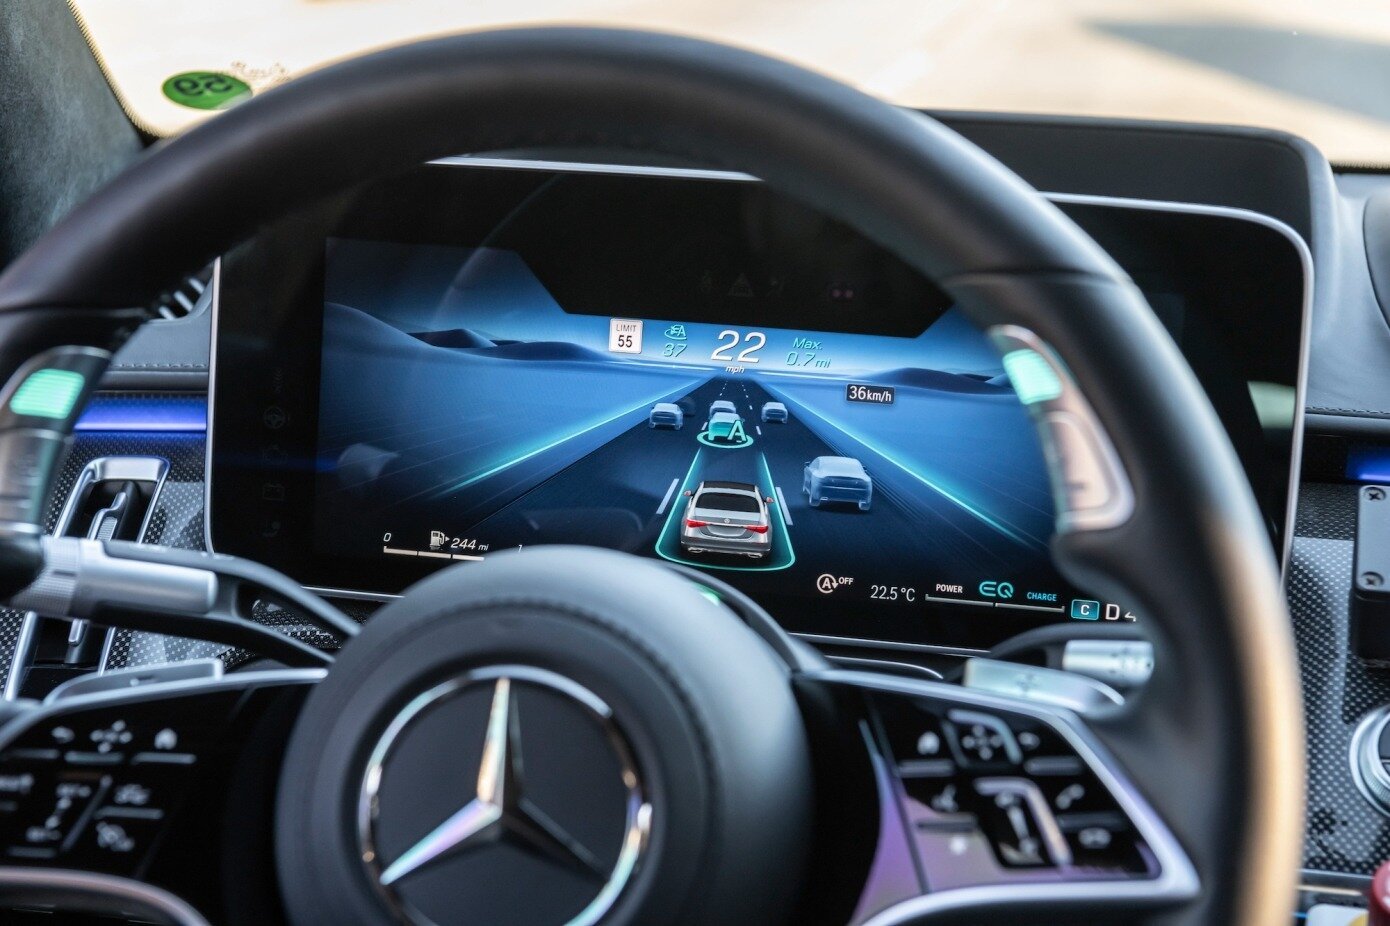 Η Mercedes γίνεται η πρώτη αυτοκινητοβιομηχανία που πωλεί αυτόνομα οχήματα επιπέδου 3 στην Καλιφόρνια